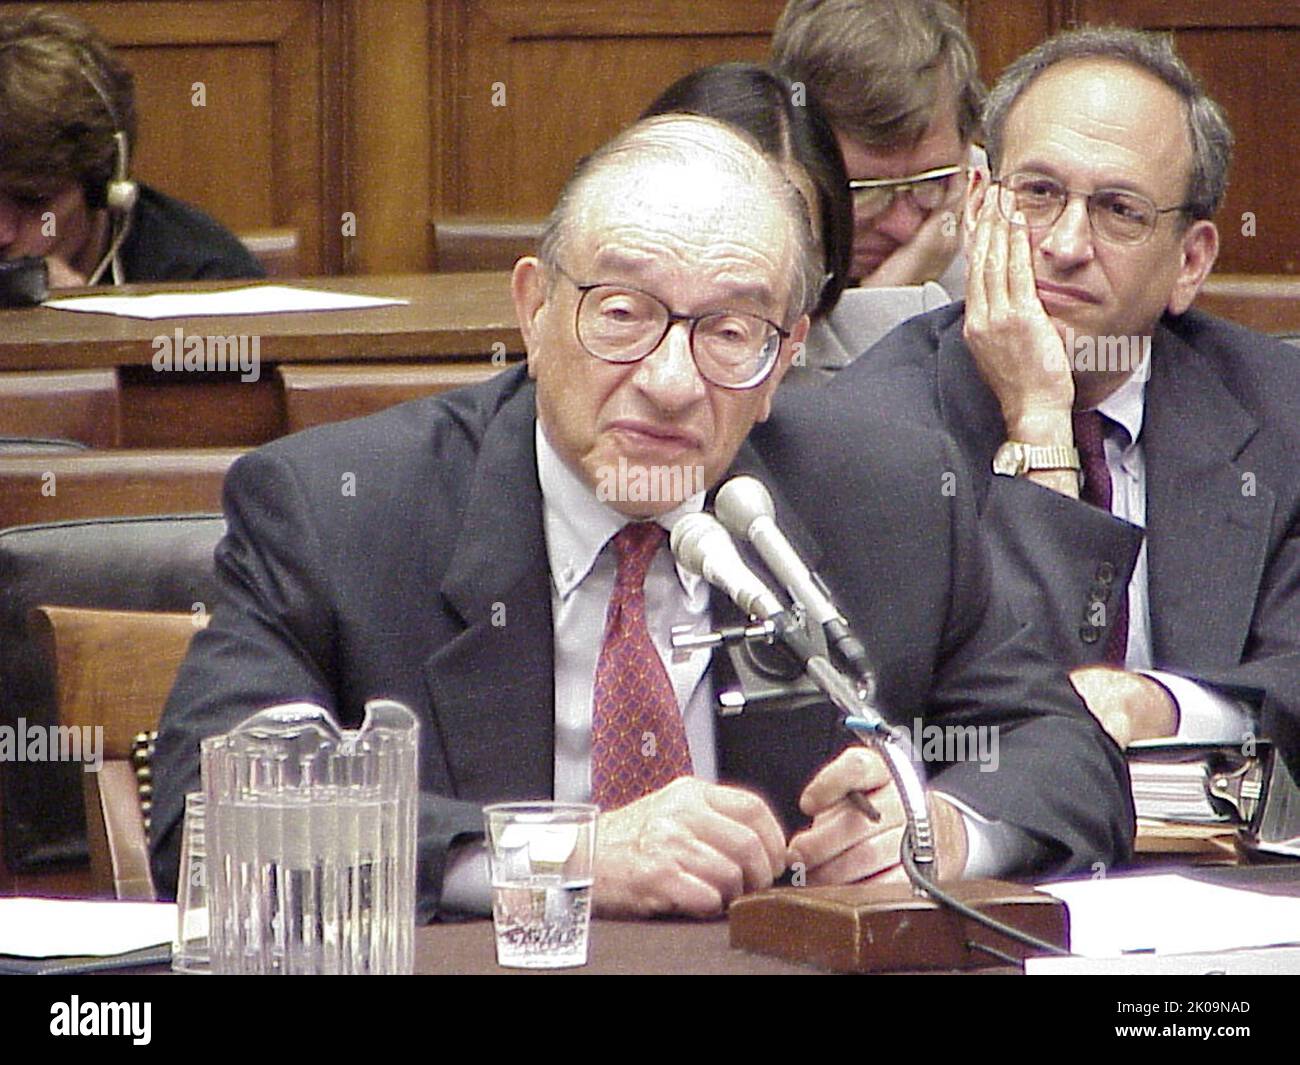 Alan Greenspan (geboren am 6. März 1926), amerikanischer Ökonom, der von 1987 bis 2006 fünf Jahre lang als Vorsitzender der Federal Reserve in den Vereinigten Staaten von 13. diente. Er arbeitet als Privatberater und berät Unternehmen über sein Unternehmen Greenspan Associates LLC. Stockfoto